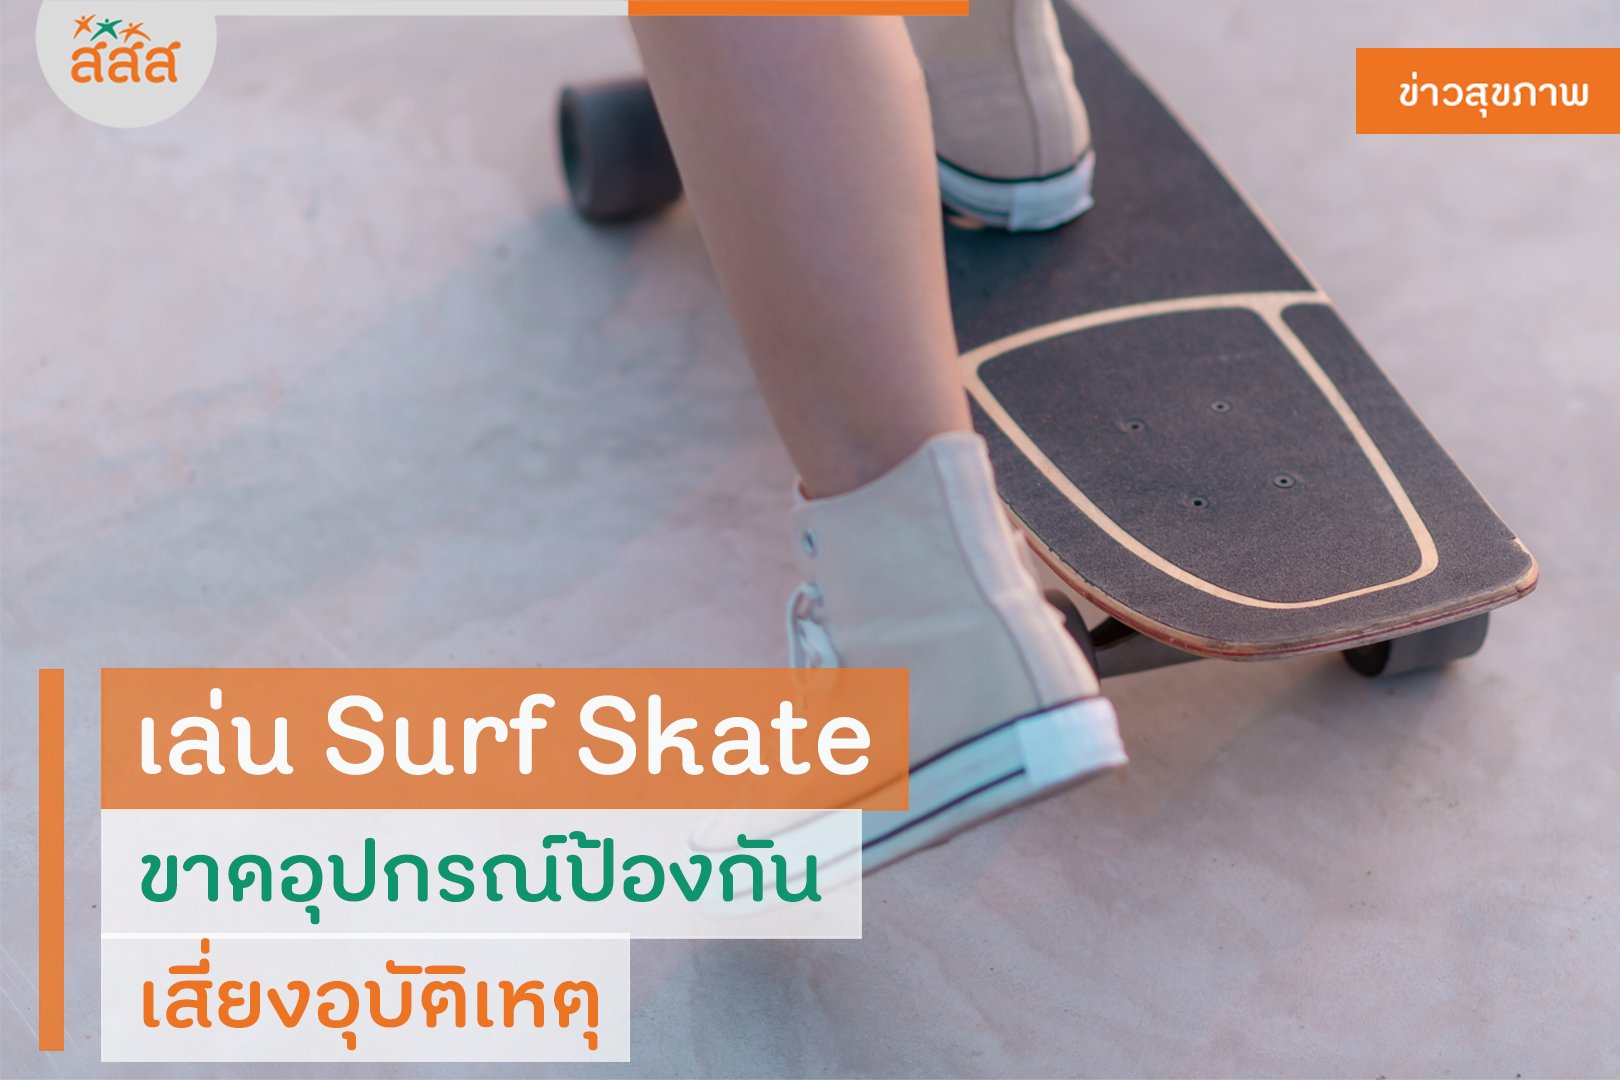 เล่น Surf Skate ขาดอุปกรณ์ป้องกัน เสี่ยงอุบัติเหตุ thaihealth